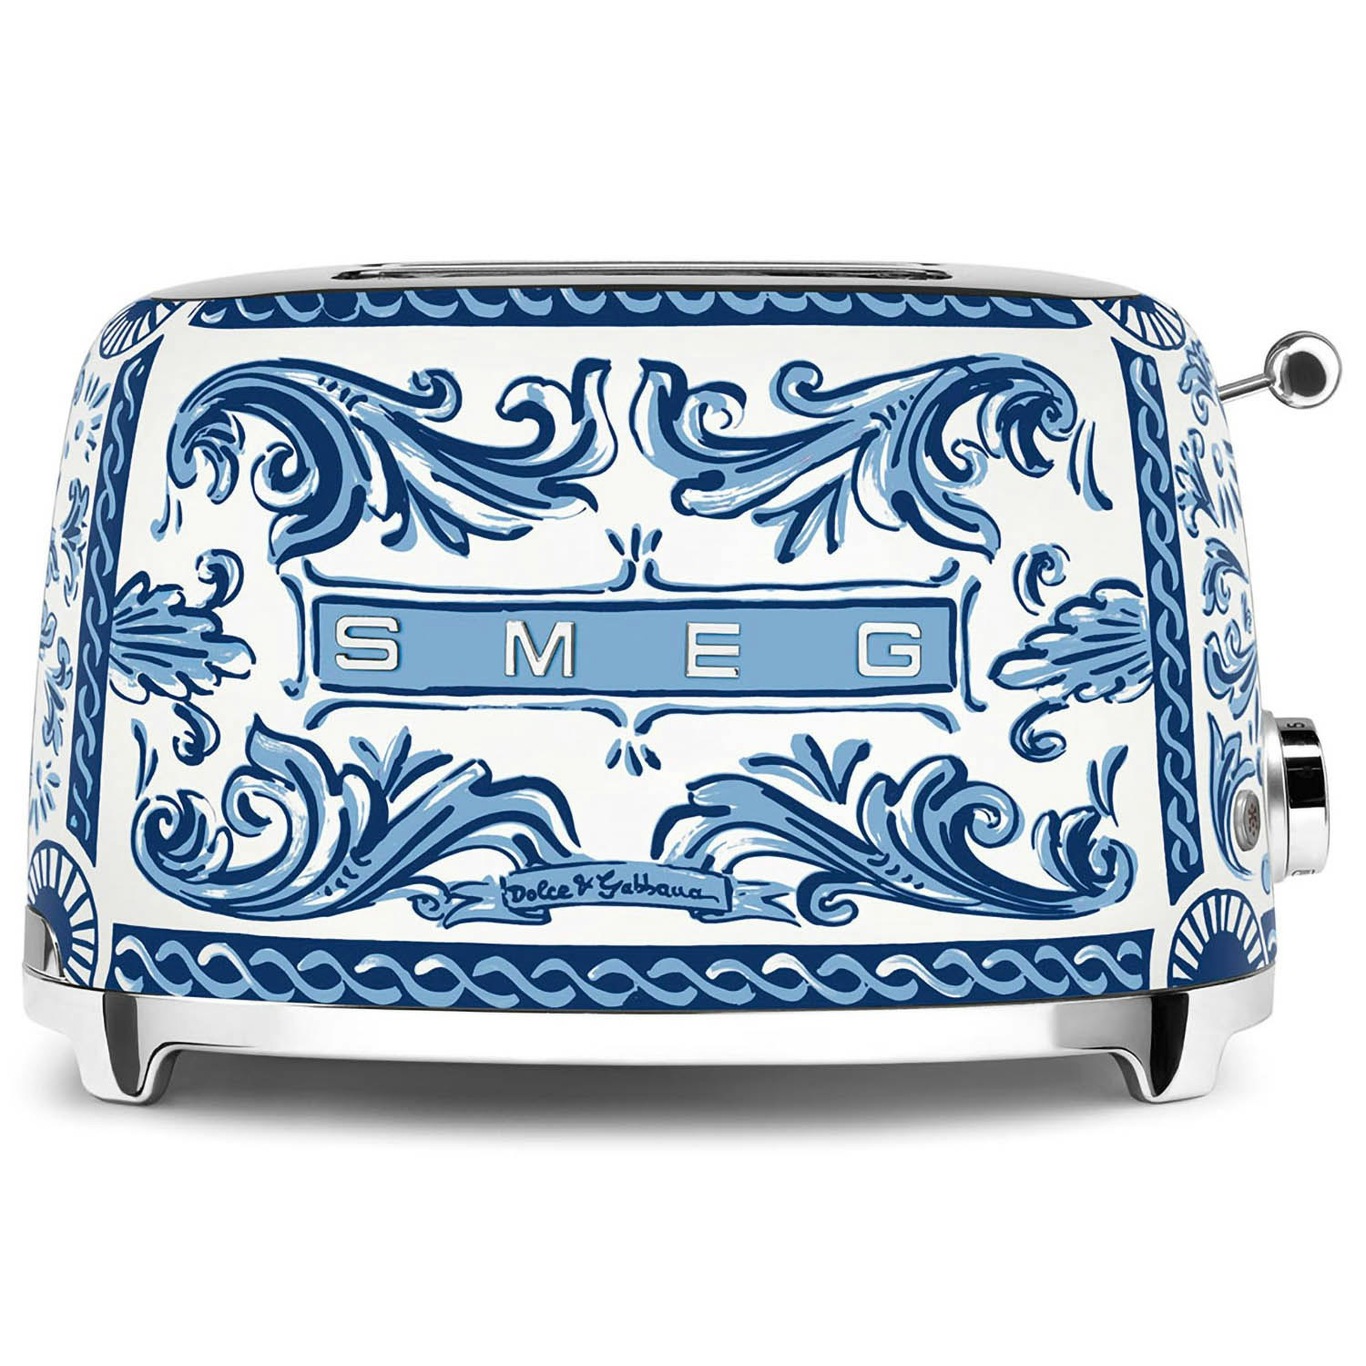 Dolce & Gabbana Toaster, Blu Mediterraneo